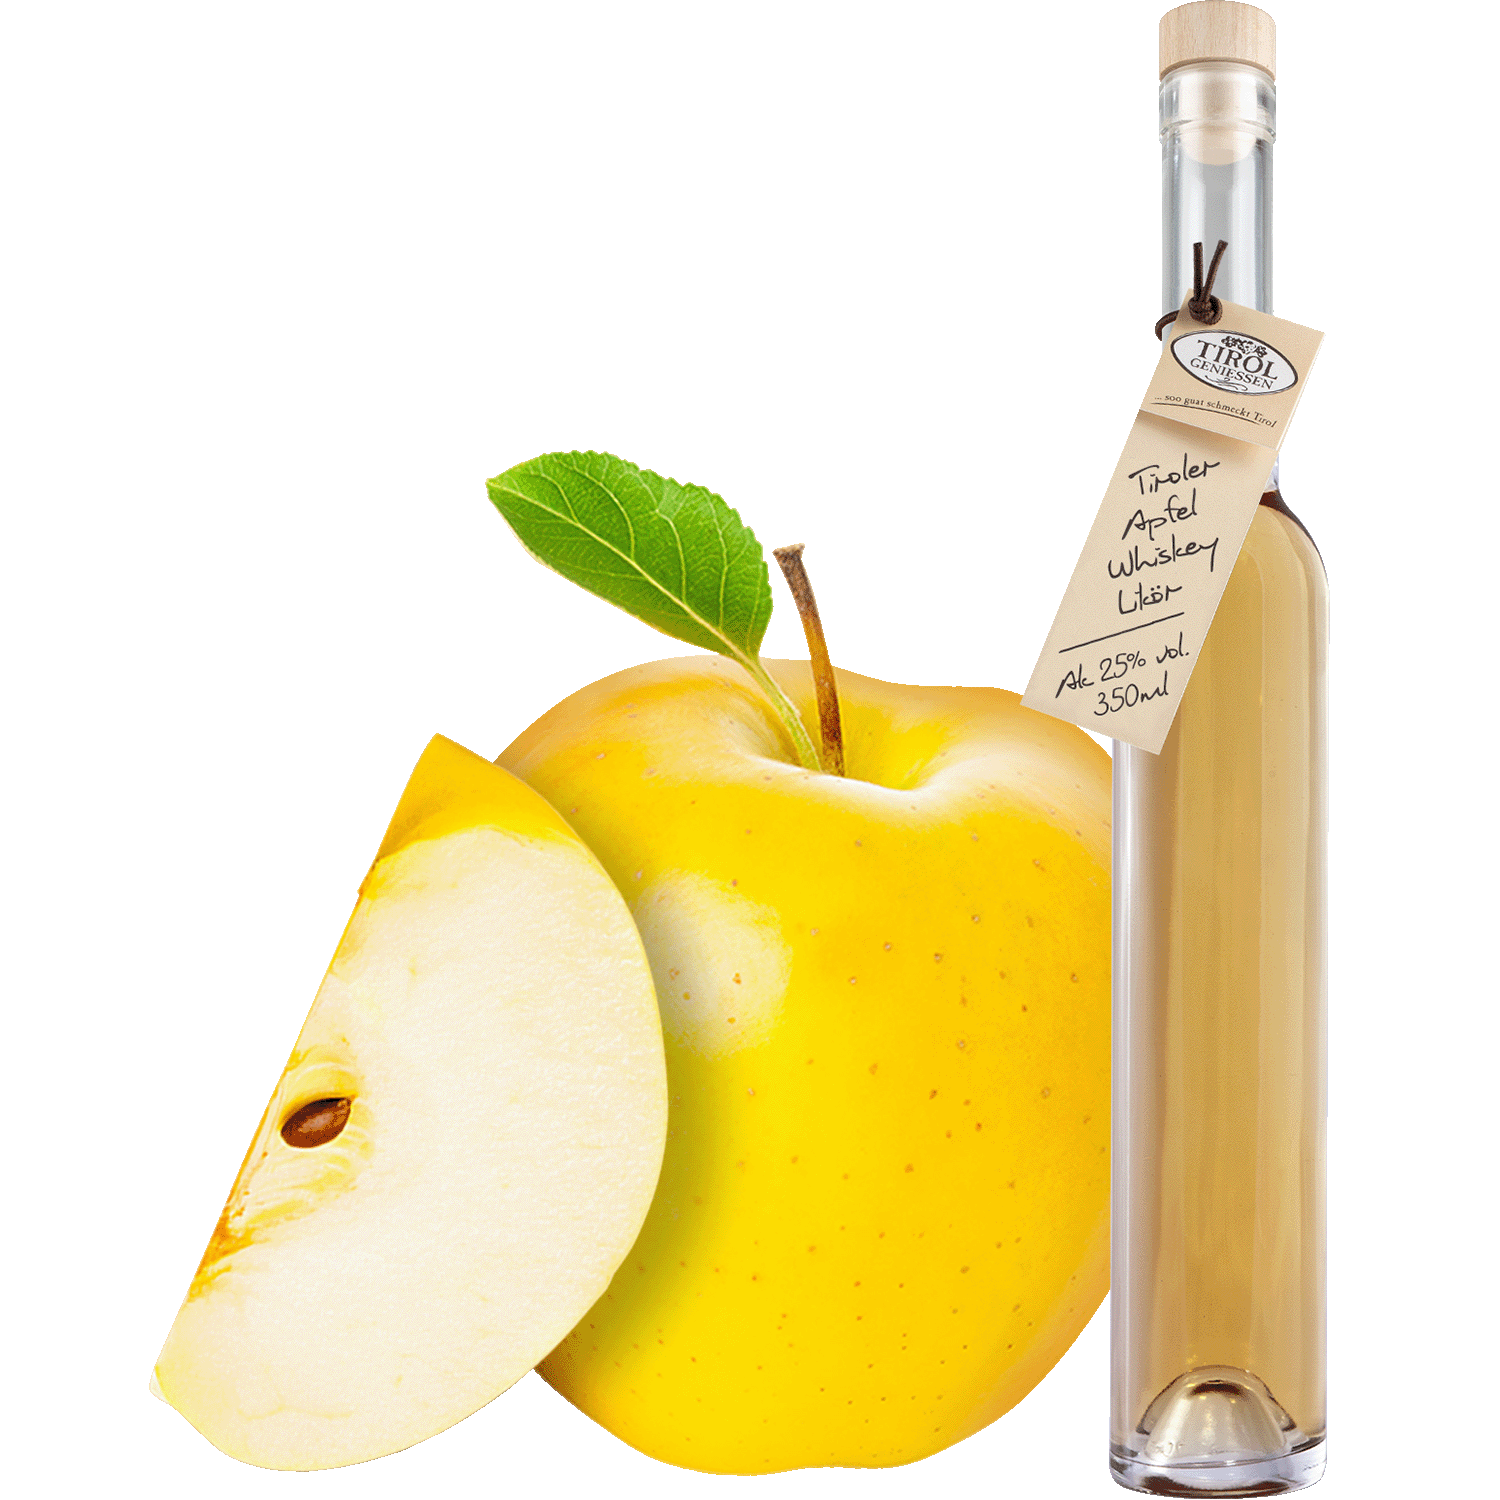 Apfel Whiskey Likör in Geschenkflasche aus Österreich von Tirol Geniessen